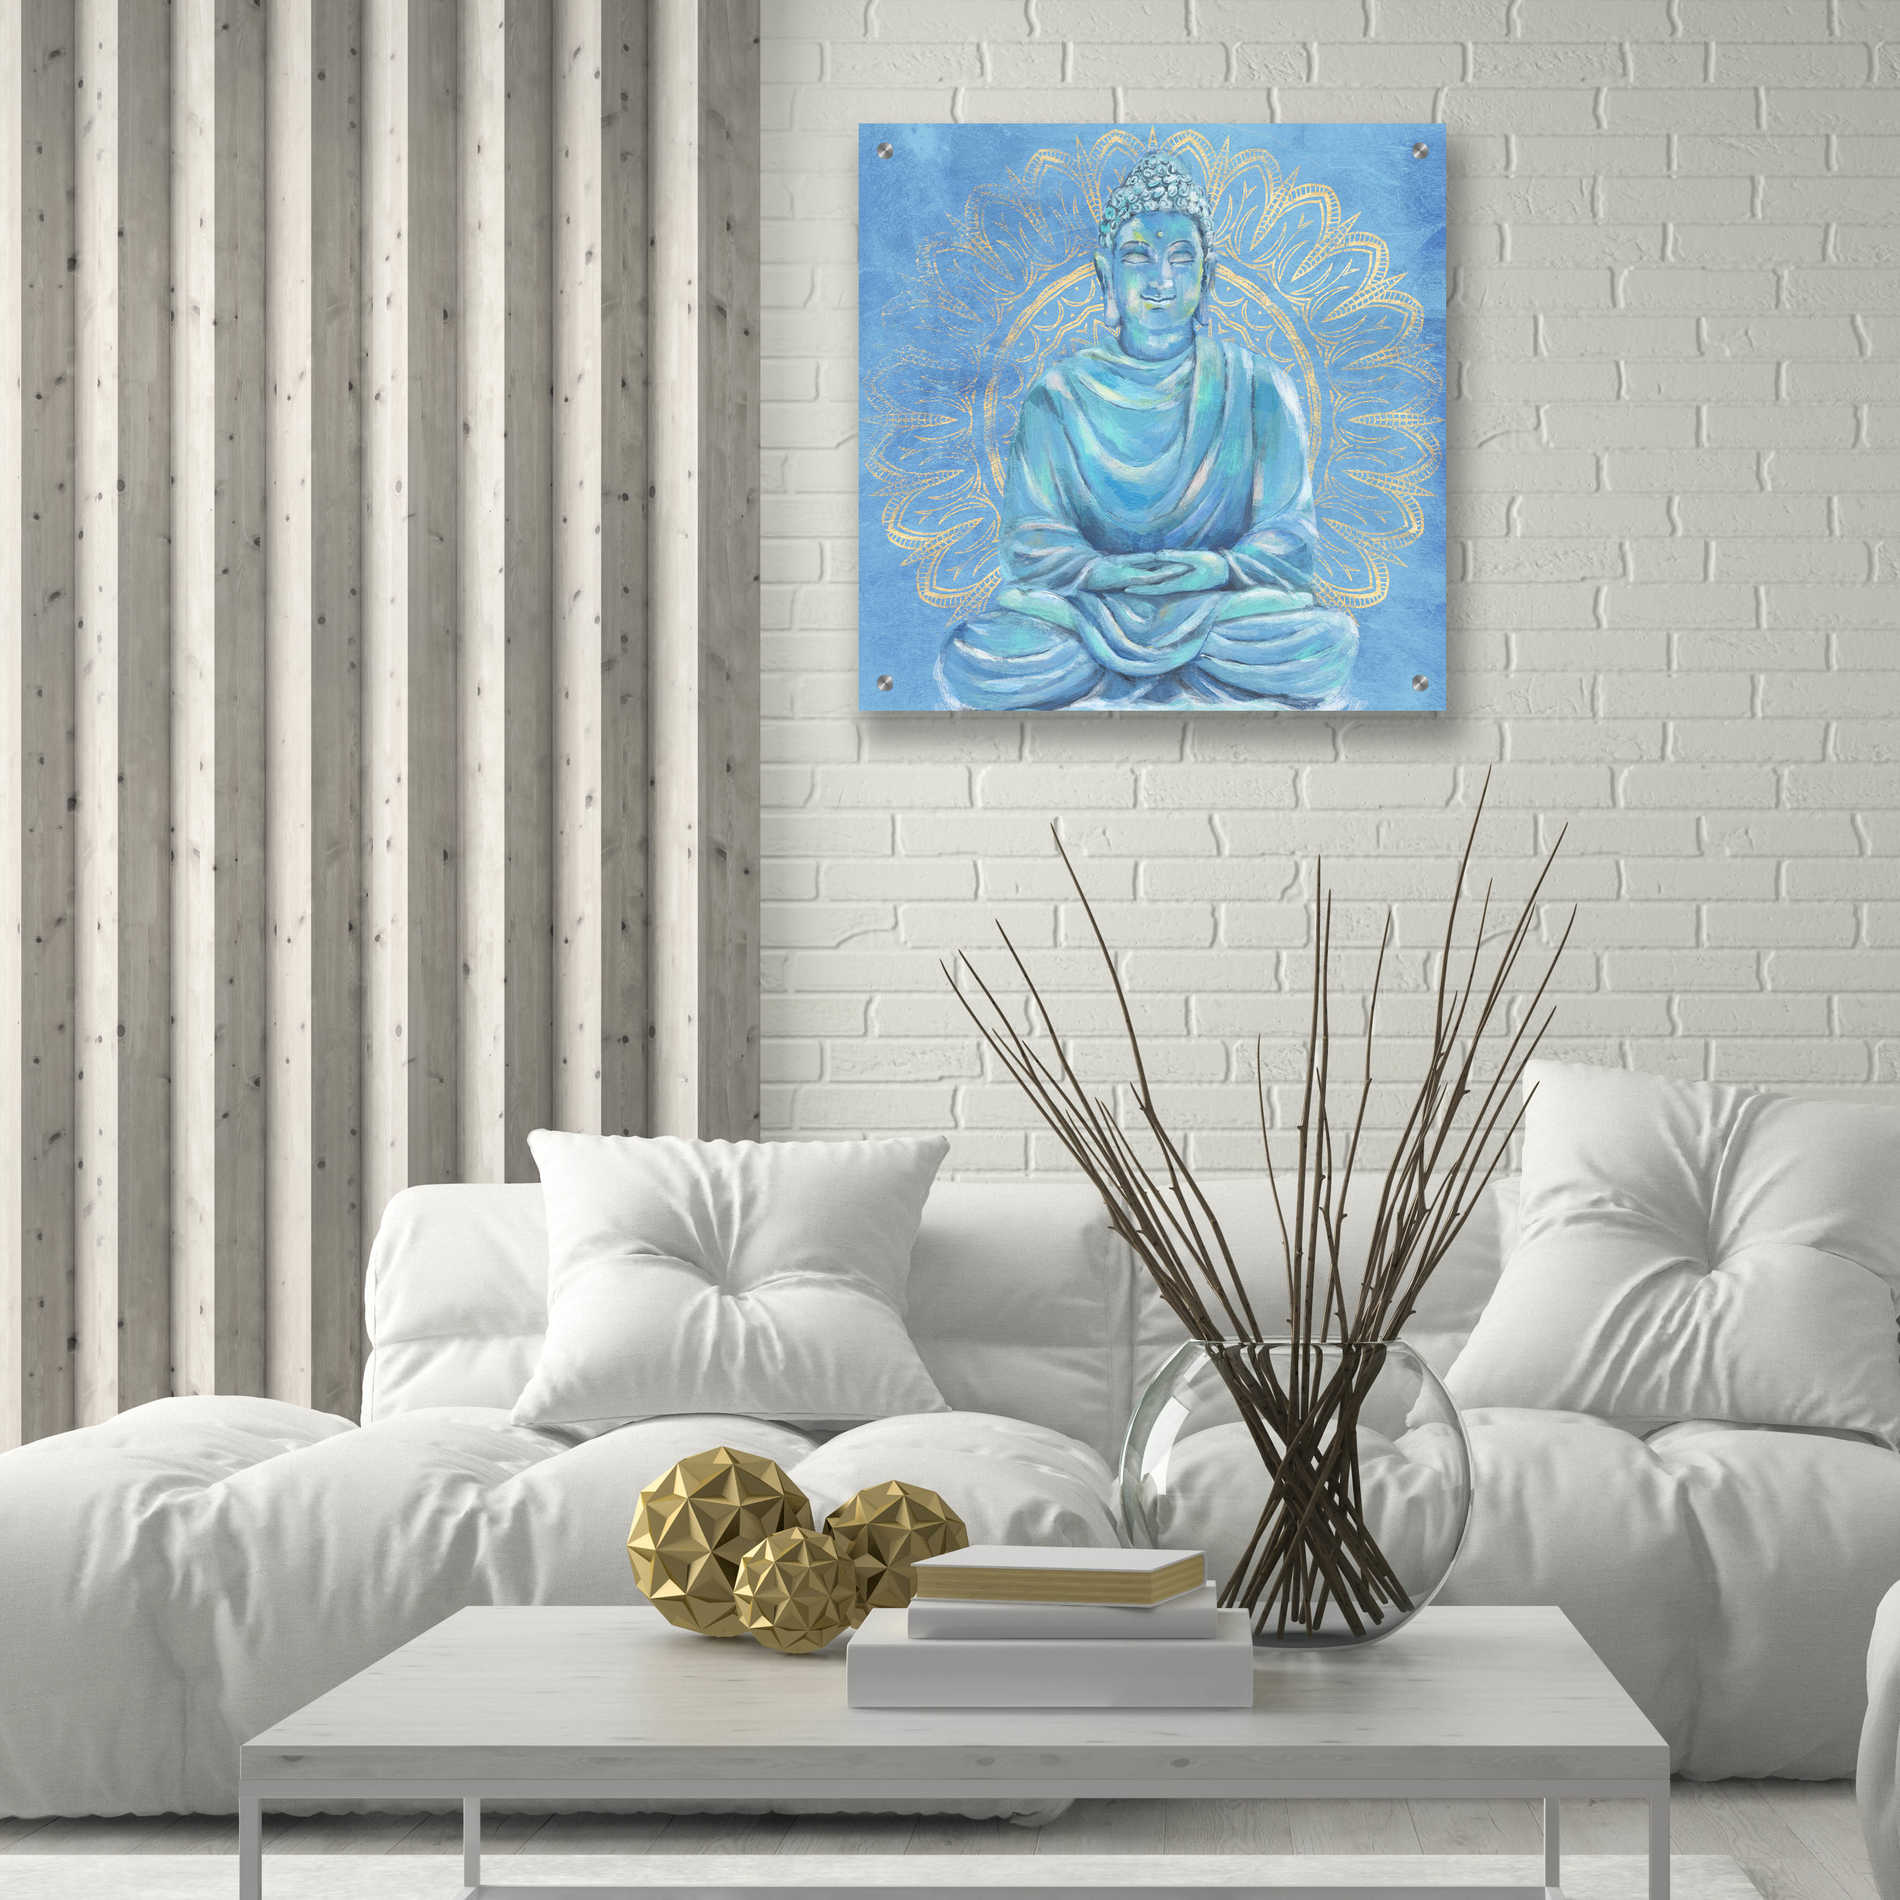 Epic Art 'Buddha on Blue I' by Annie Warren, Acrylic Glass Wall Art,24x24